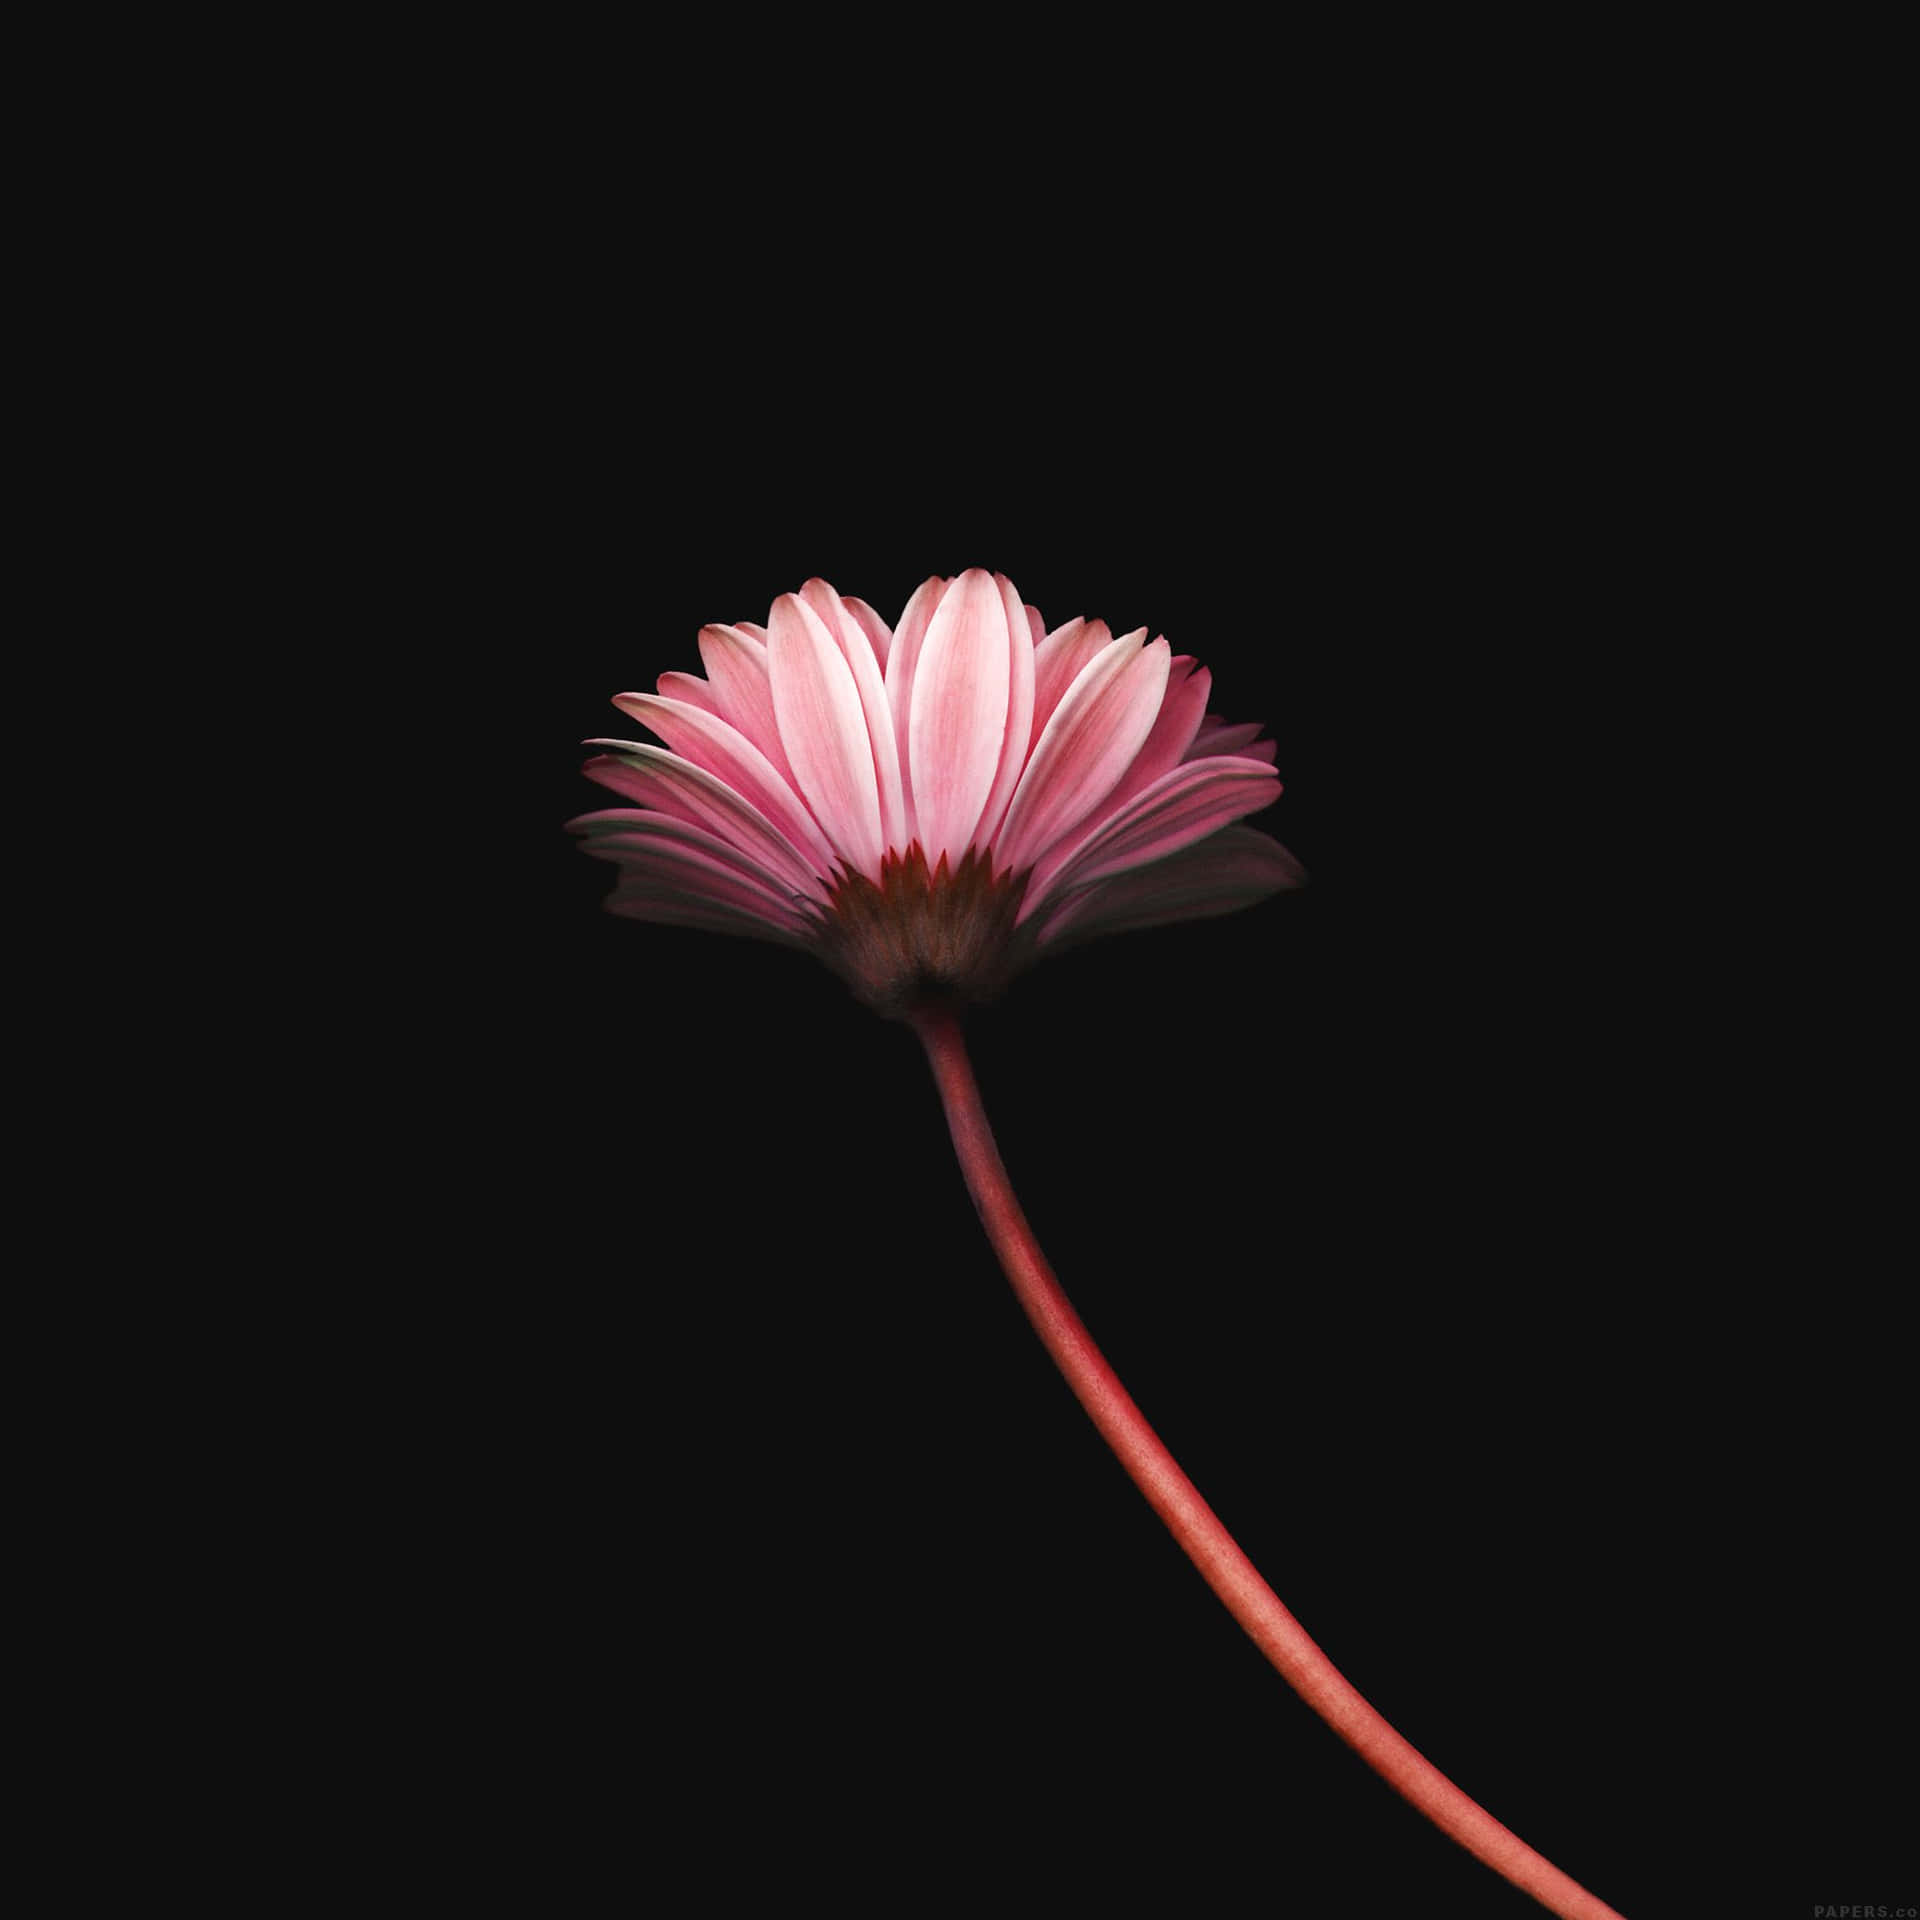 Elegant Simplicity: A Close-up Of A Single Blossom